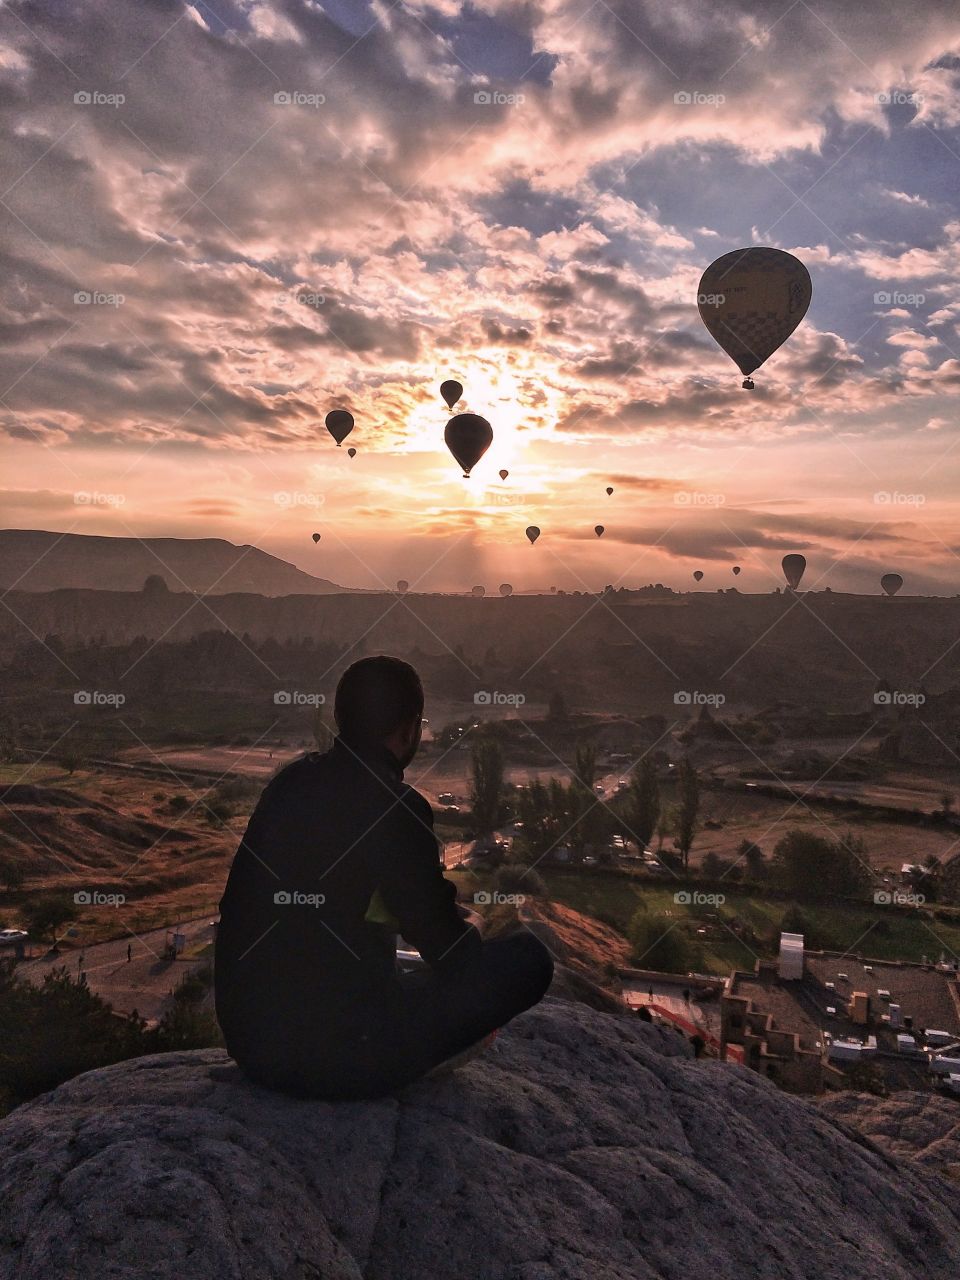 Sunrise in Cappadocia